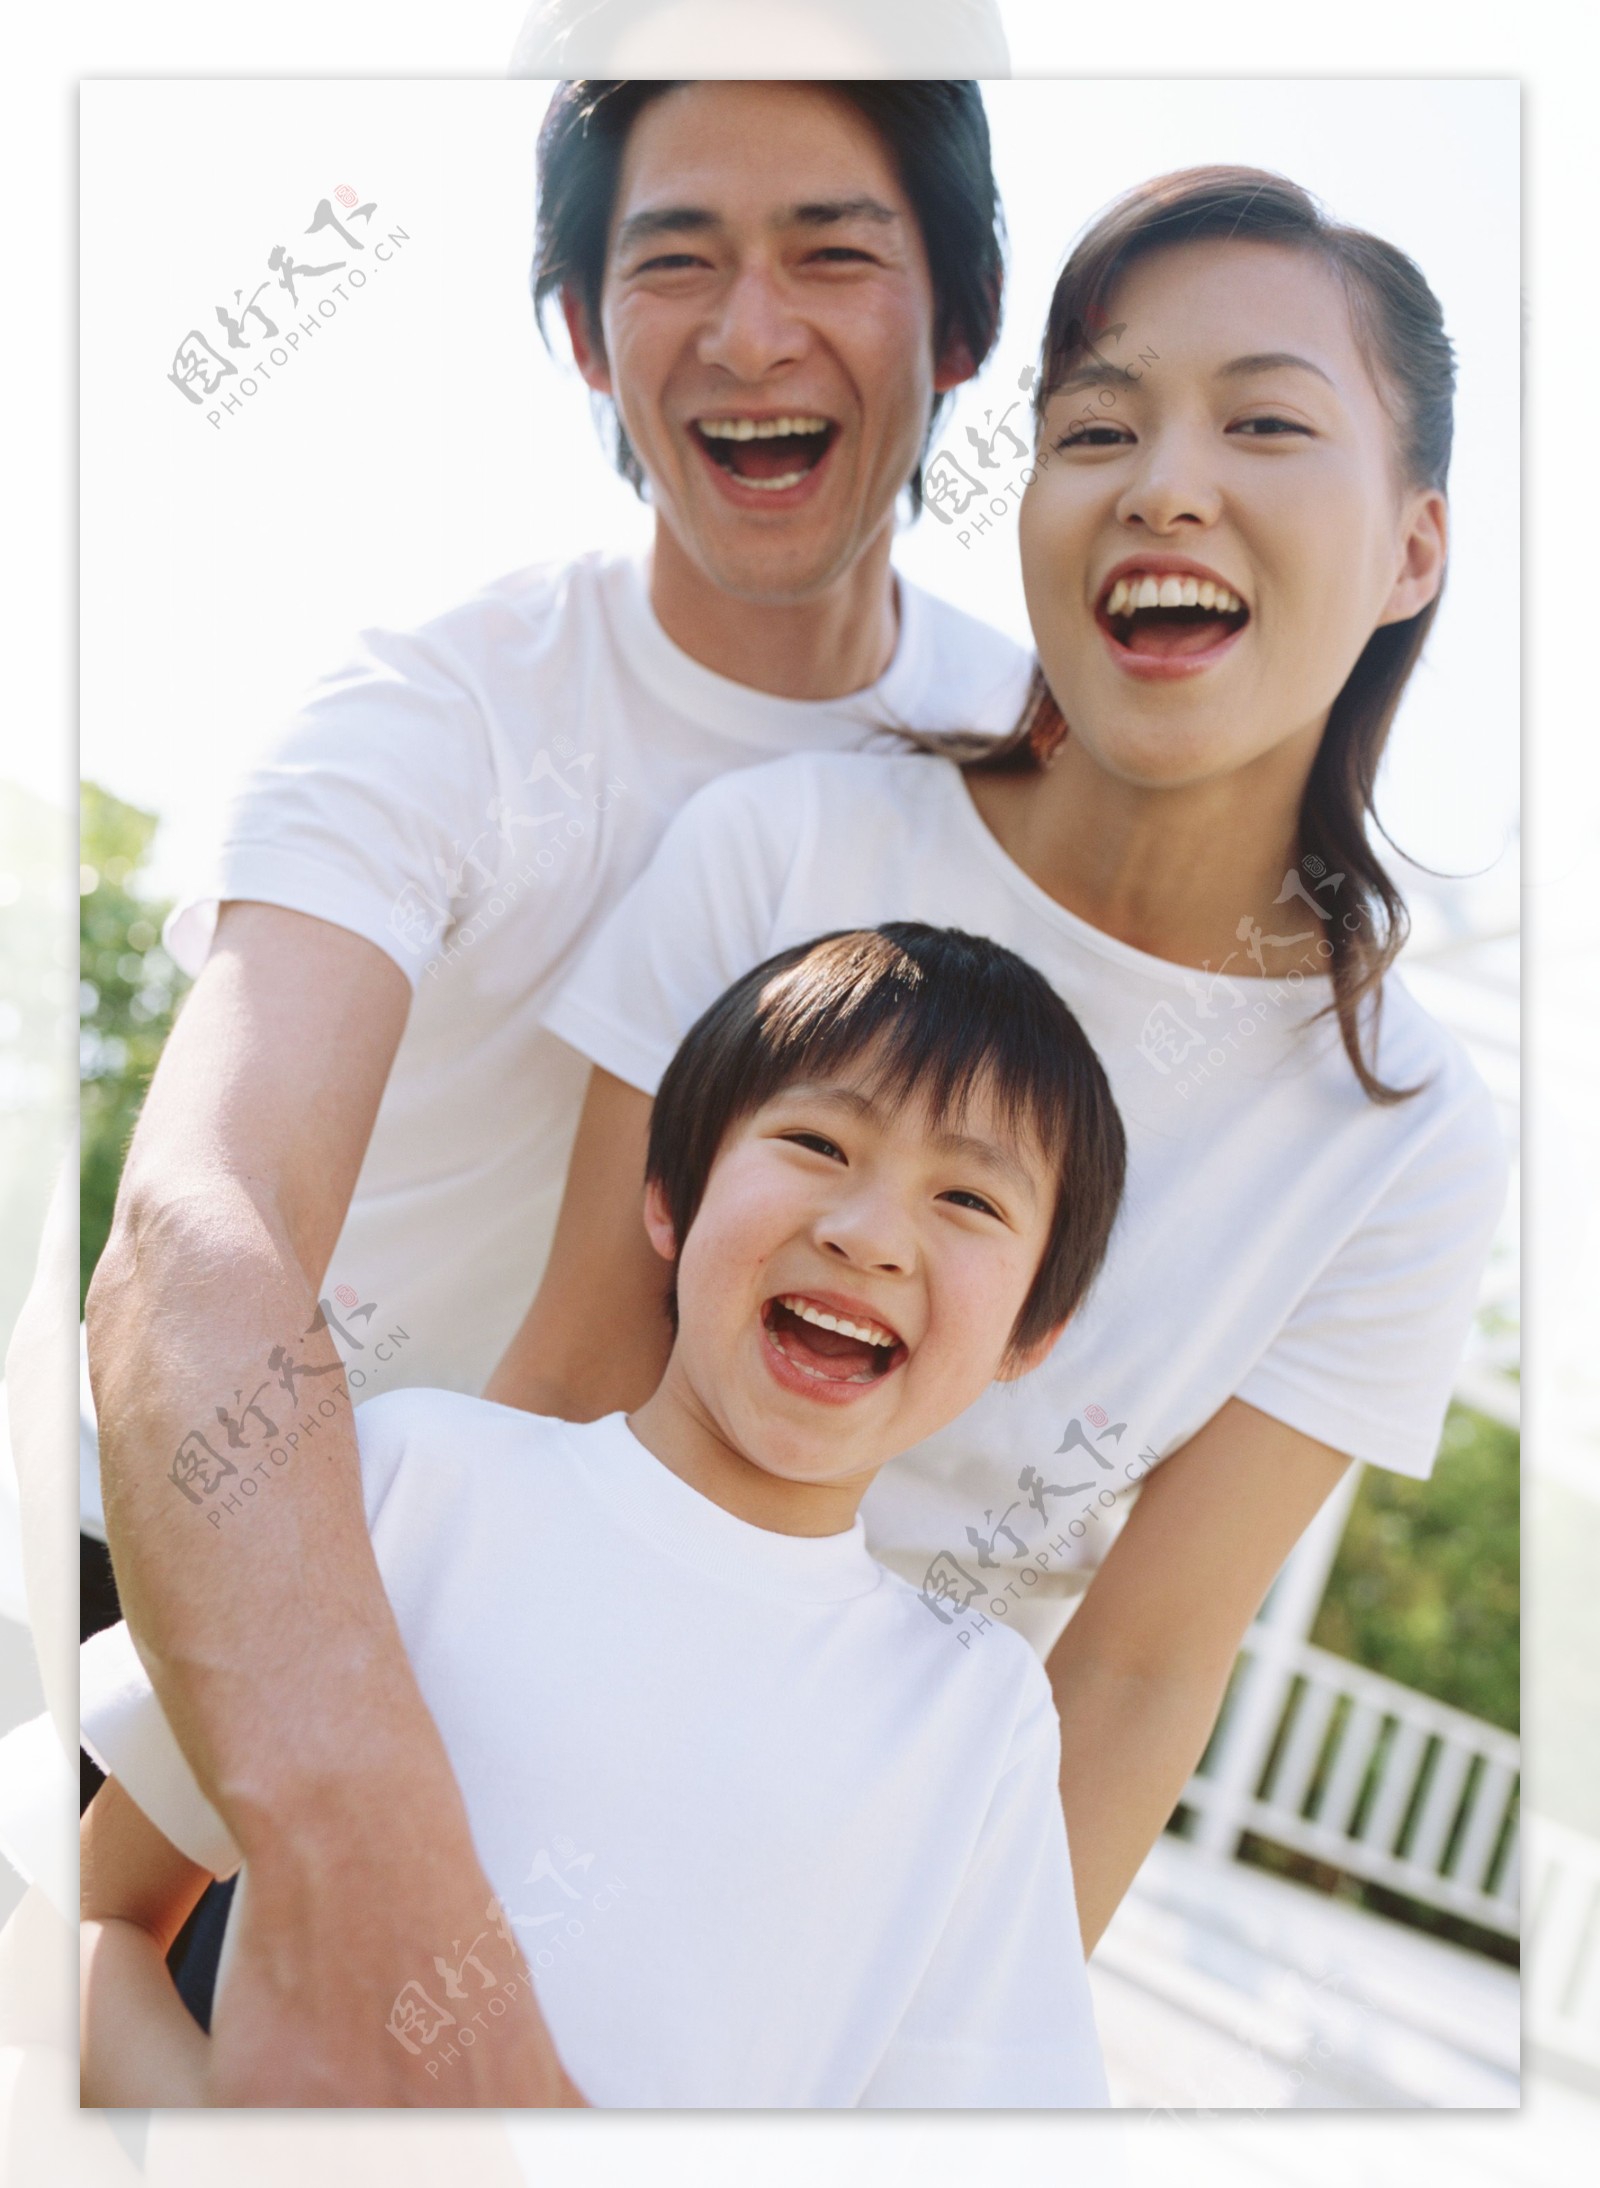 家庭全家一家人温馨幸福美满孩子父母和谐欢乐快乐天伦之乐全球首席大百科